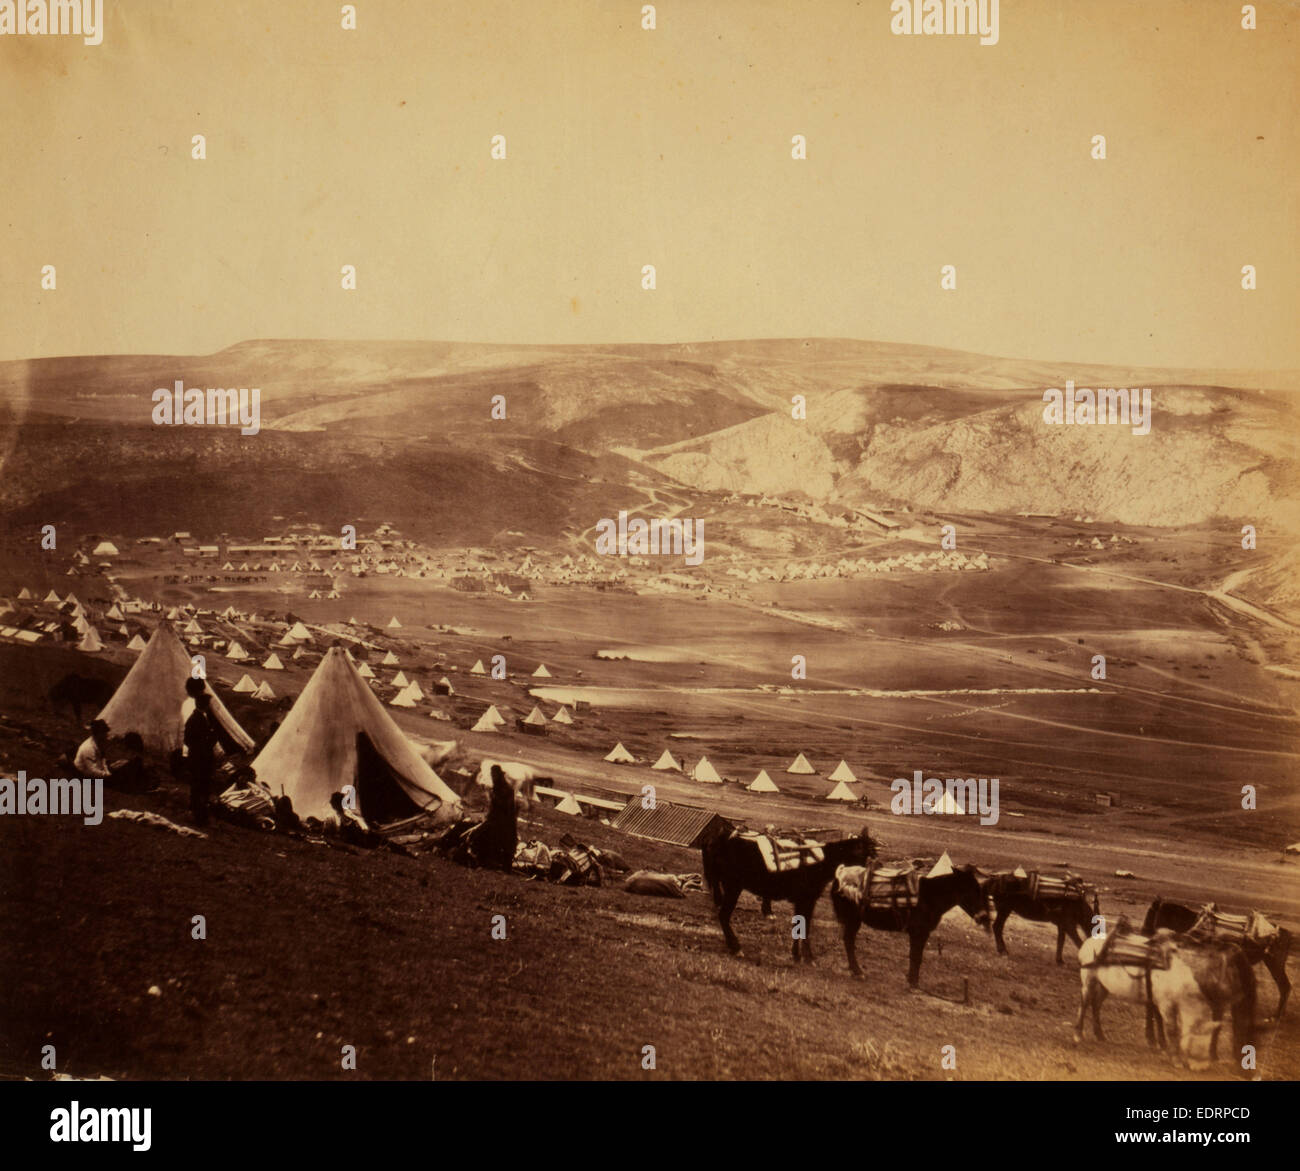 Camp de cavalerie près de Balaklava, guerre de Crimée, 1853-1856, Roger Fenton guerre historique photo de la campagne Banque D'Images